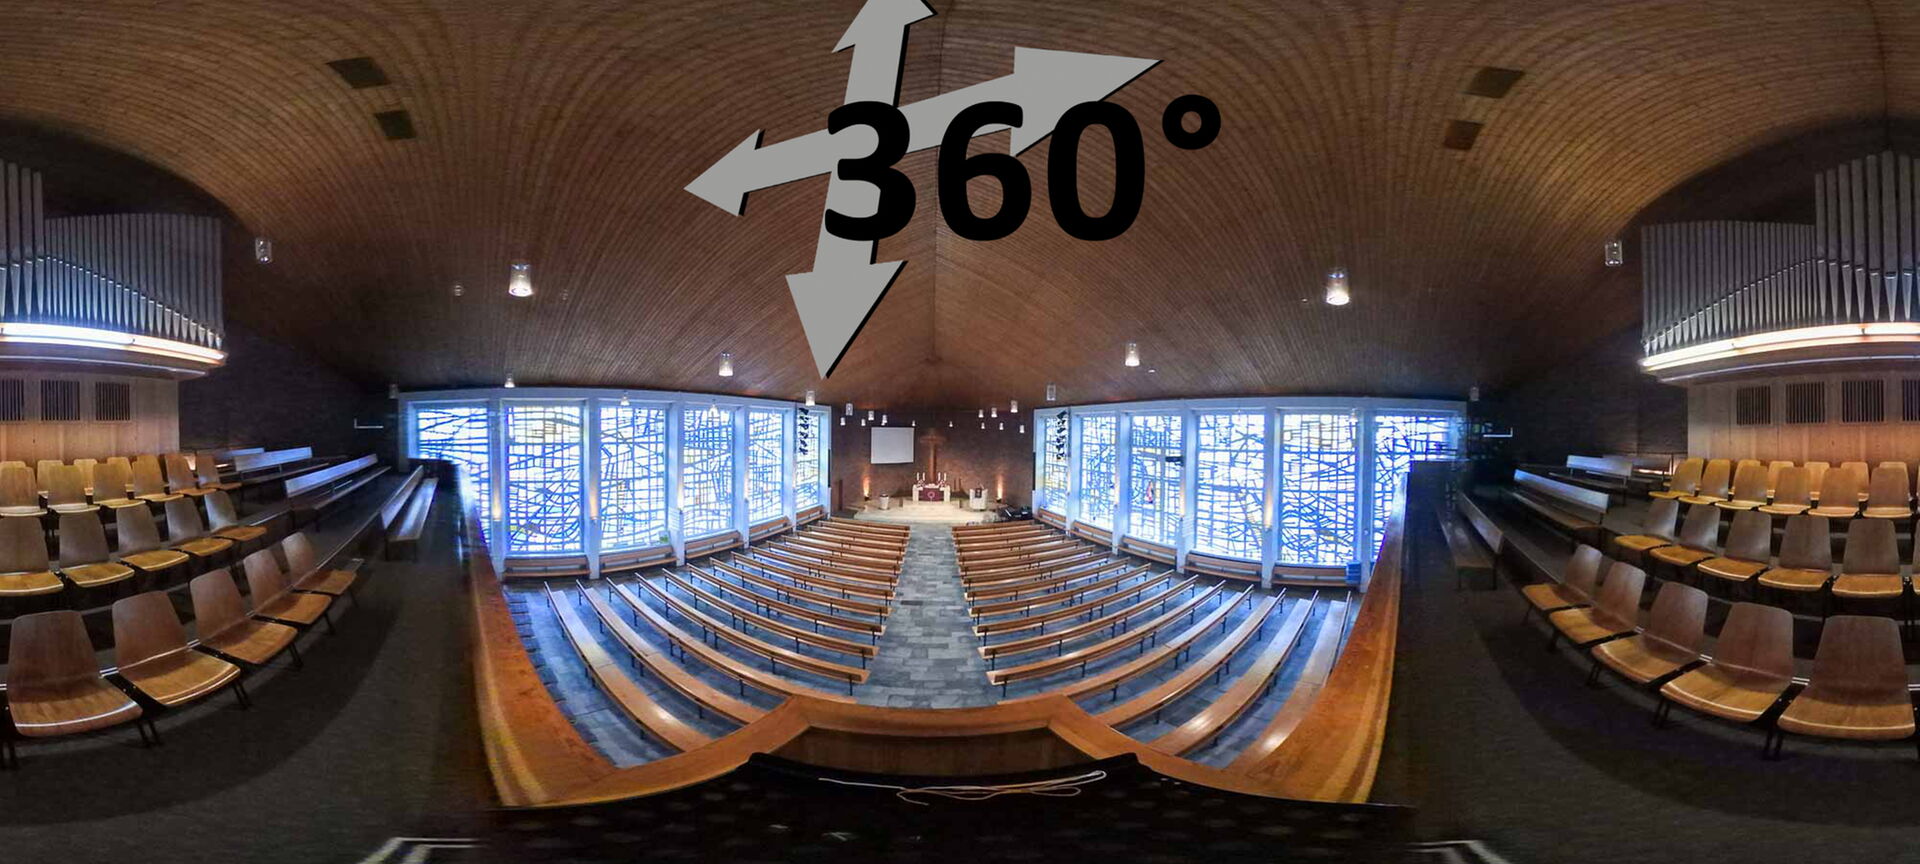 360-Grad-Ansichten unserer Kirchen